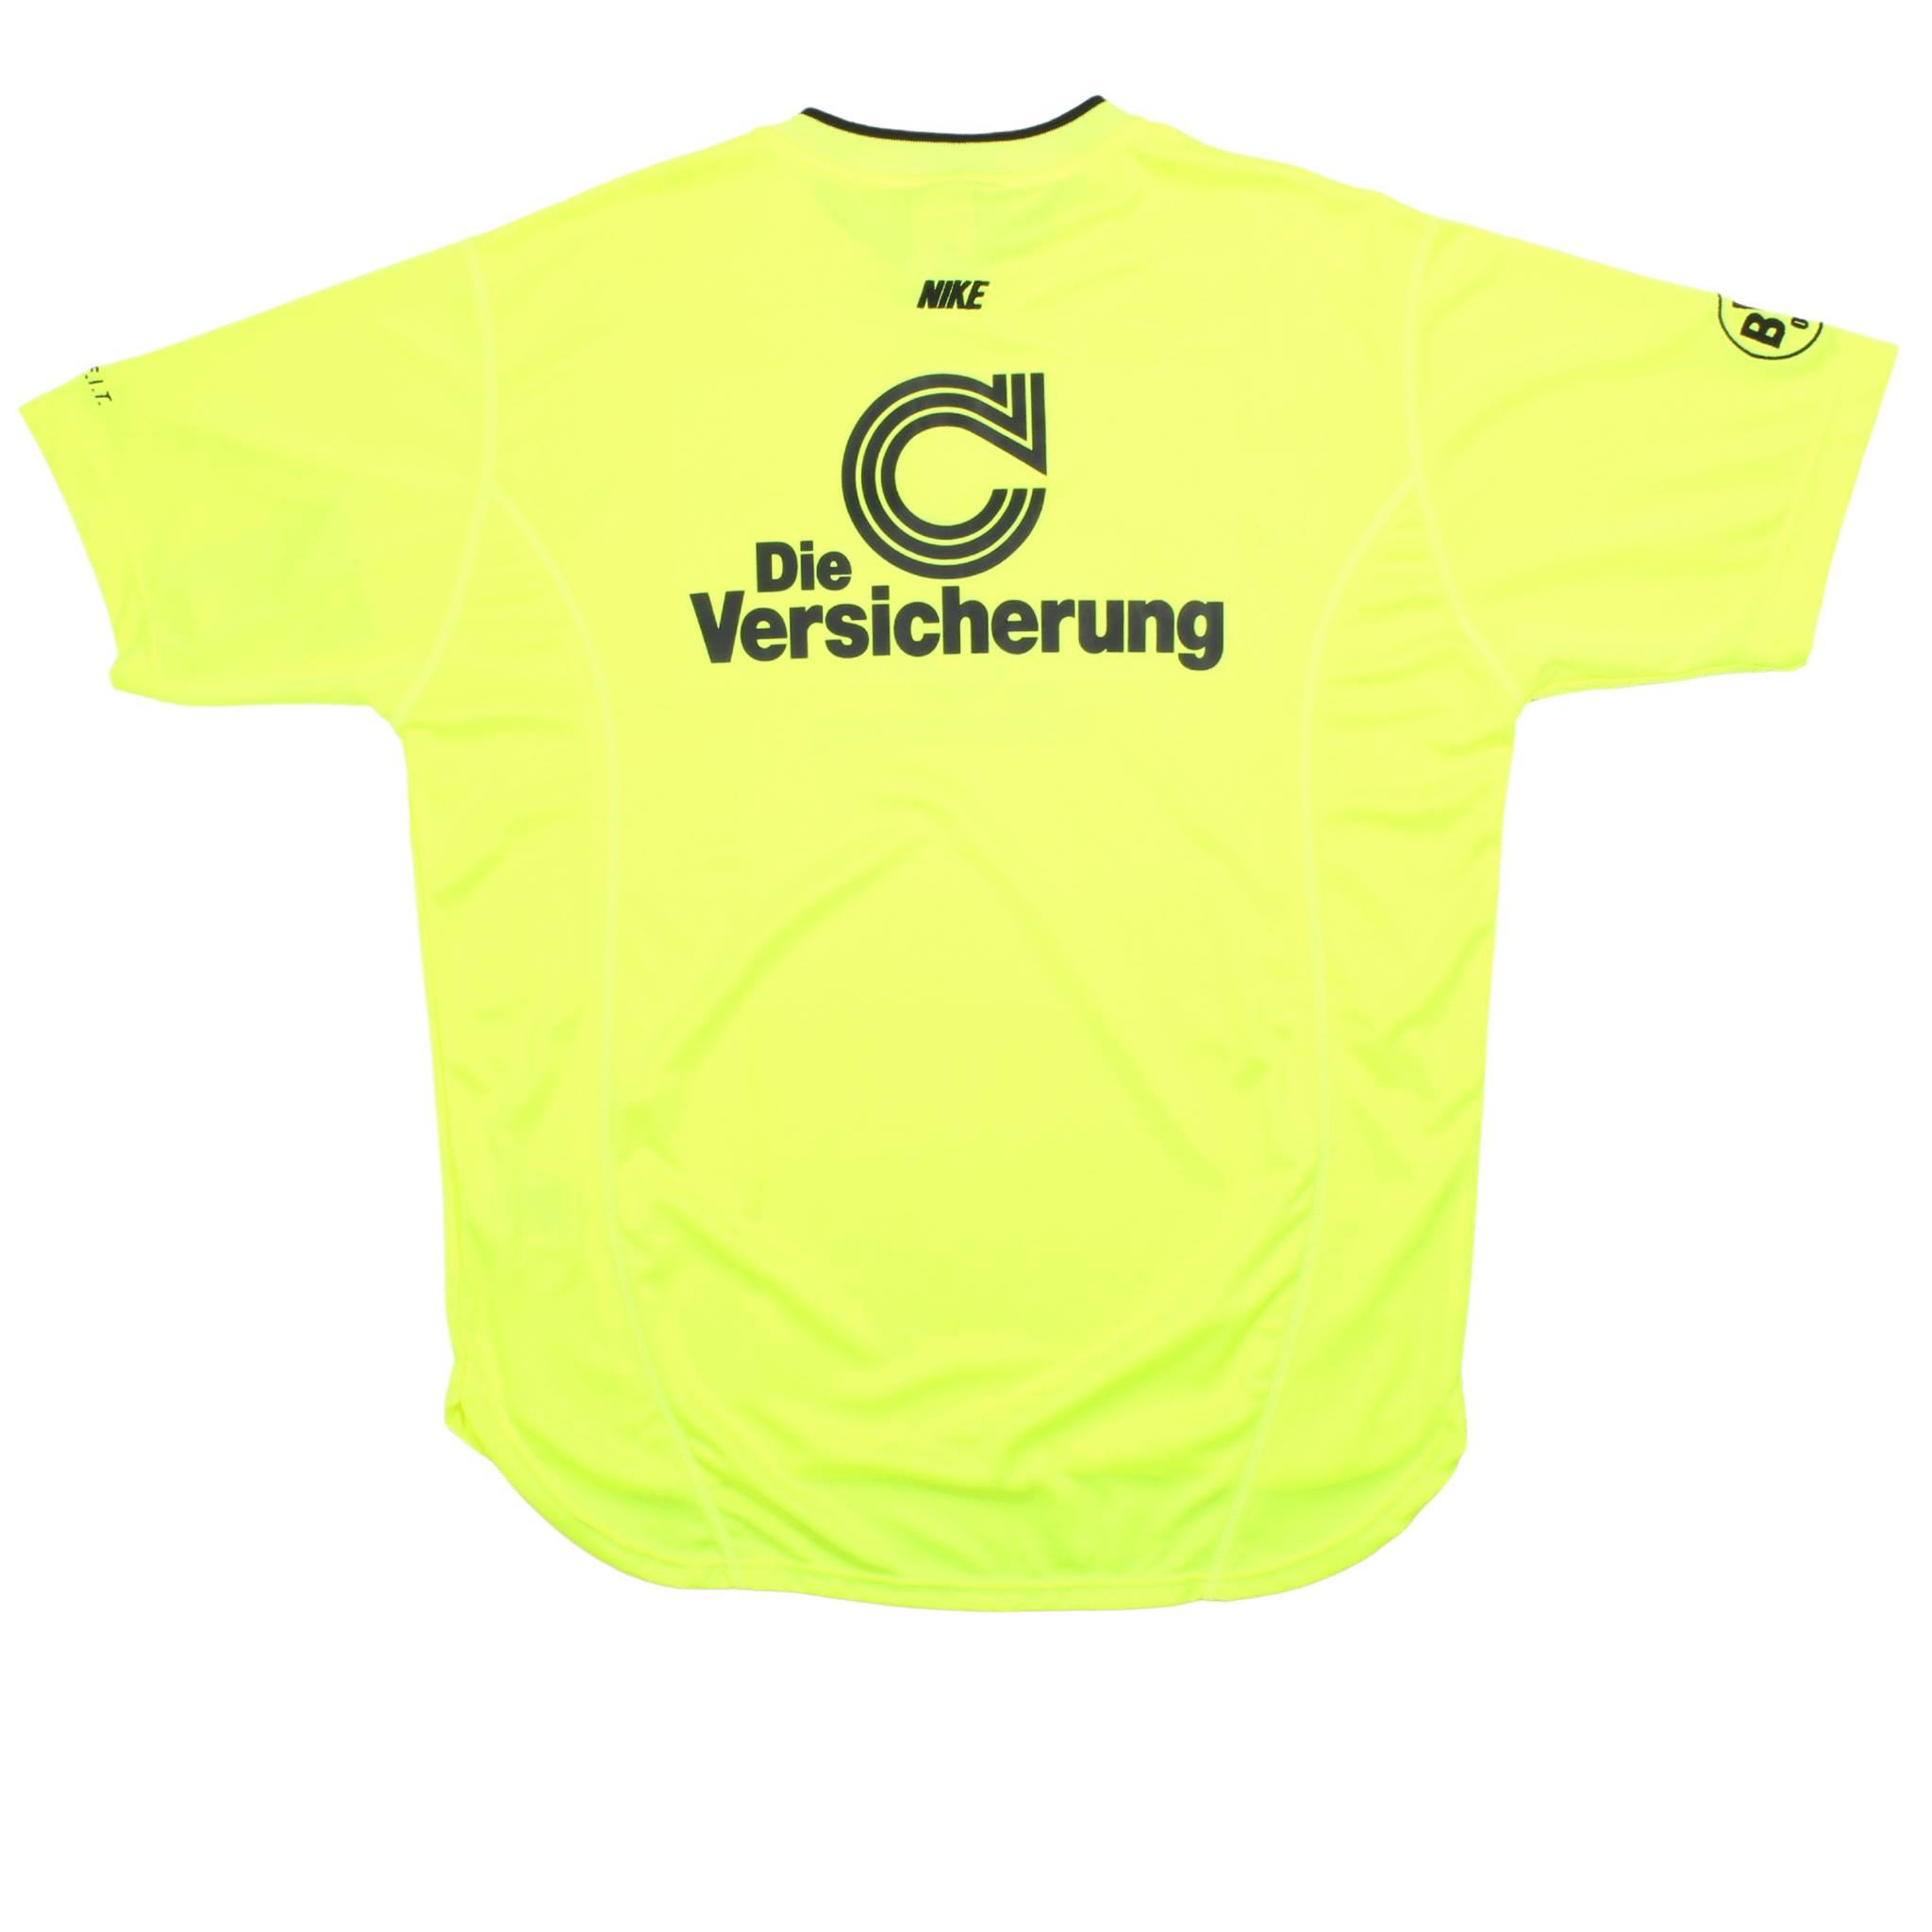 Vintage Nike Borussia Dortmund Training Shirt (M) BNWT